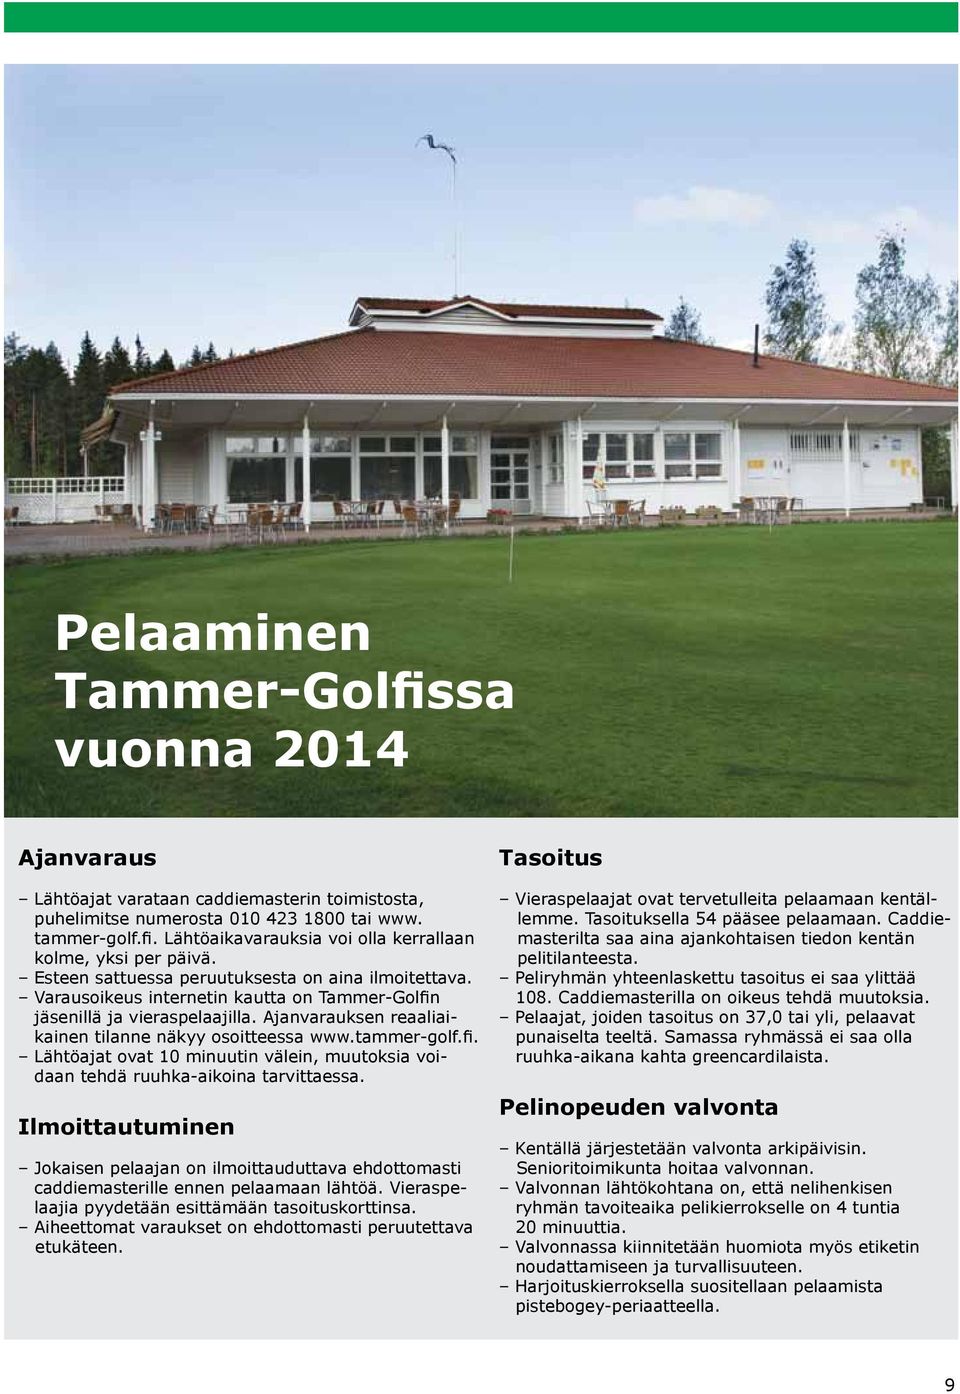 tammer-golf.fi. Lähtöajat ovat 10 minuutin välein, muutoksia voidaan tehdä ruuhka-aikoina tarvittaessa.